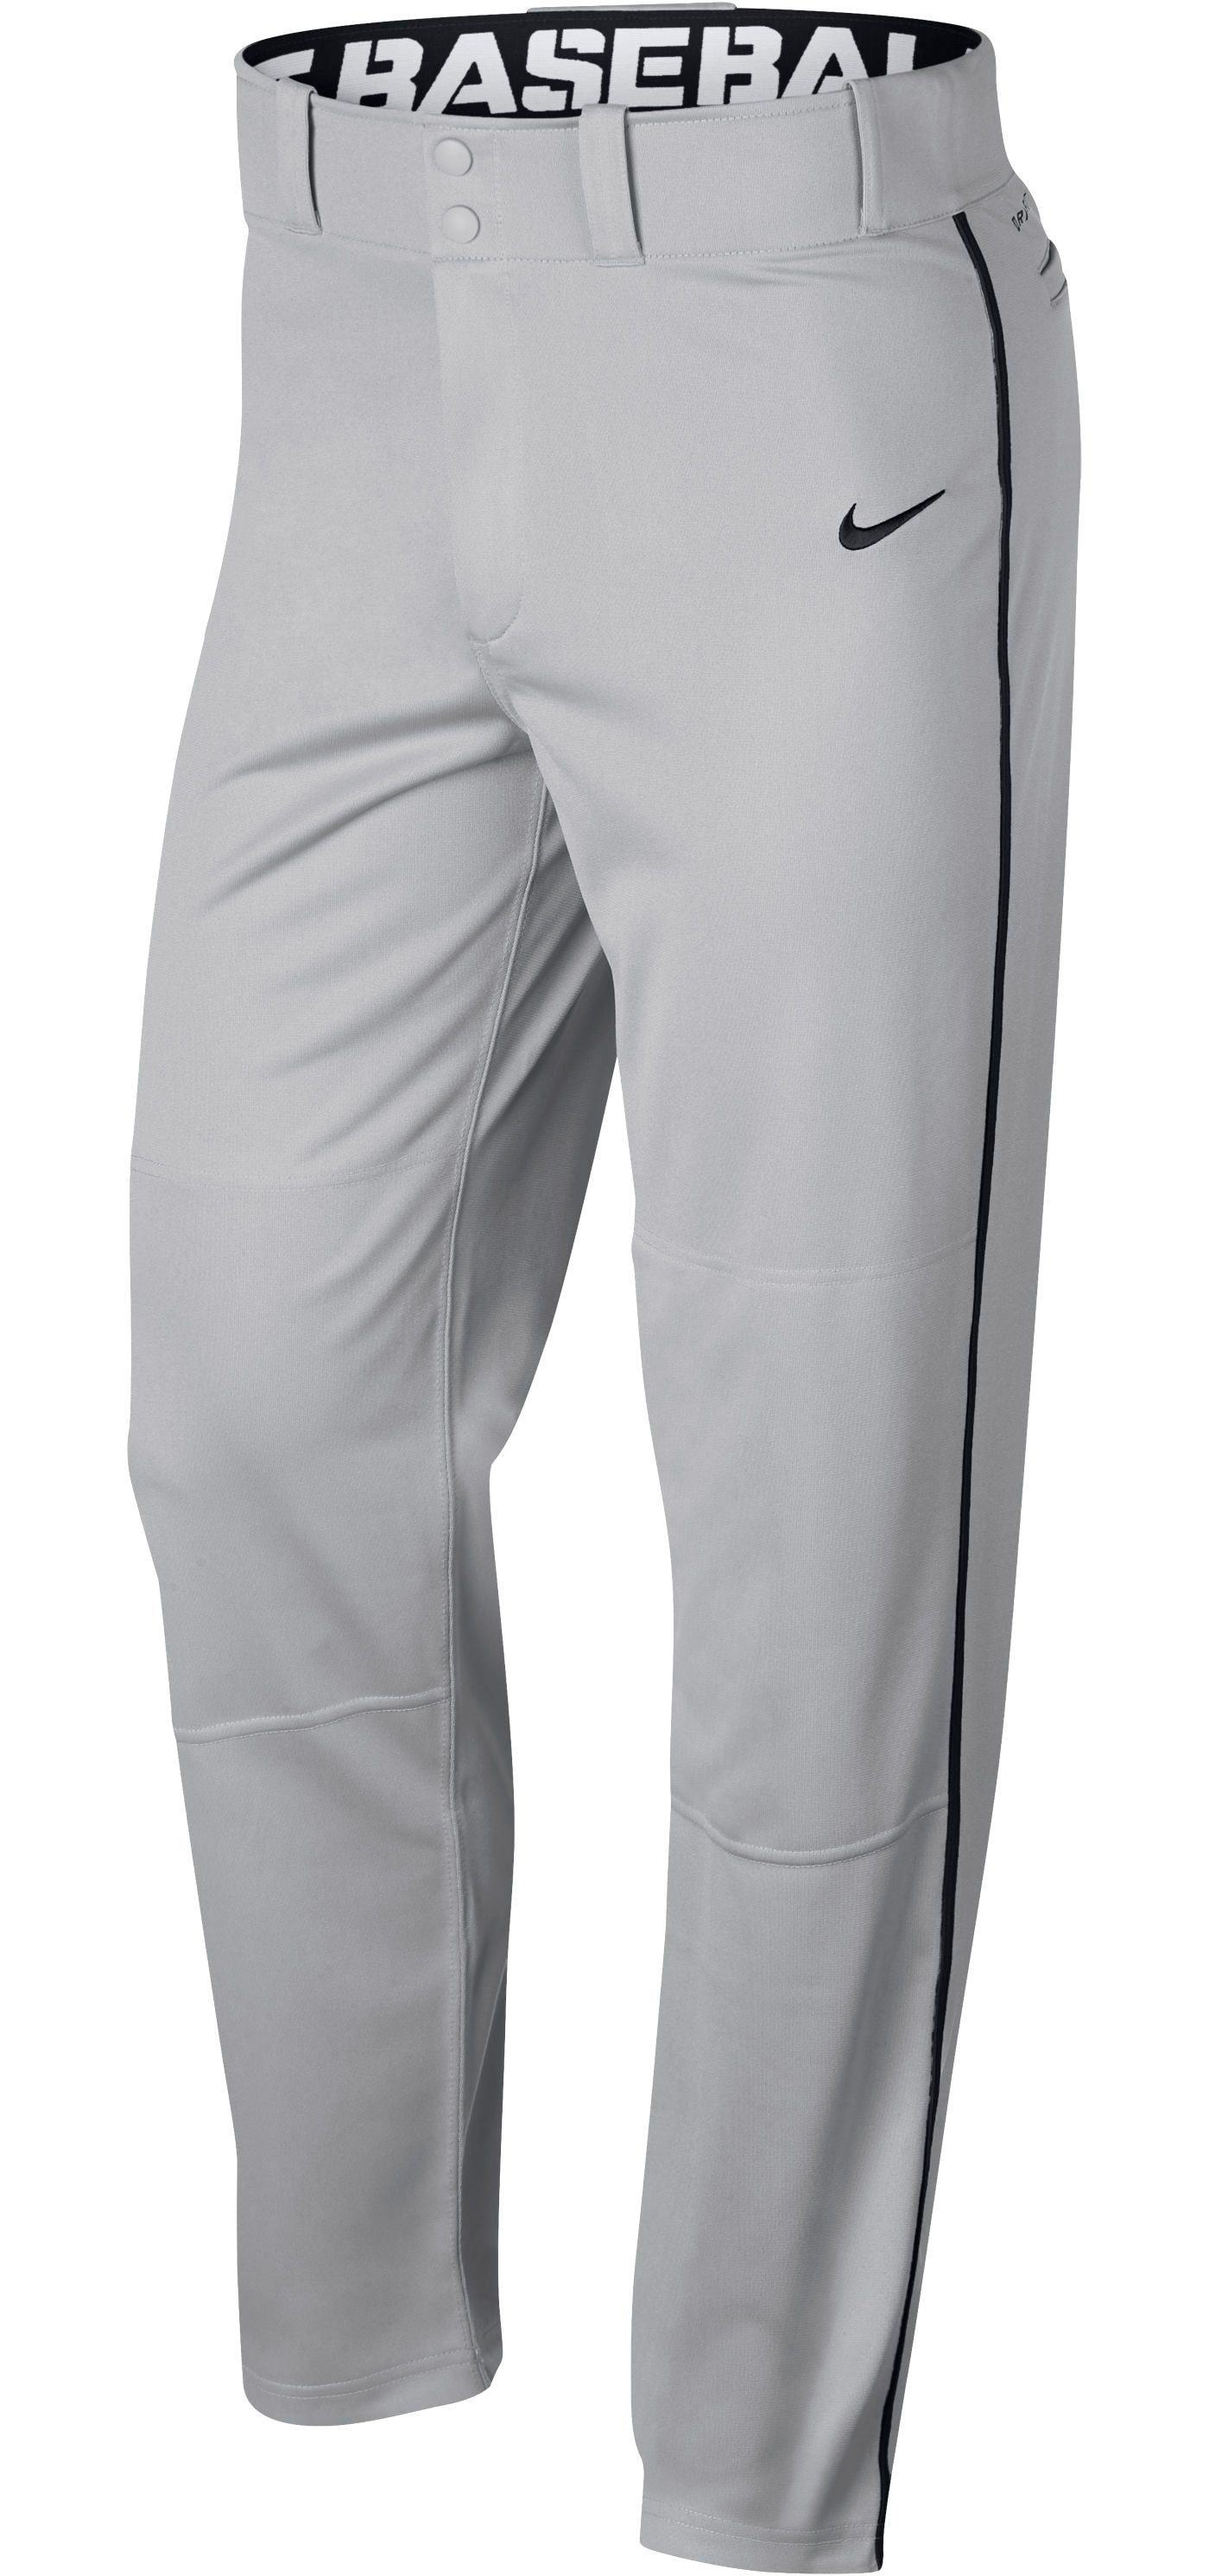 Nike Men's Swoosh Piped Dri-FIT Baseball Pants | DICK'S Sporting Goods